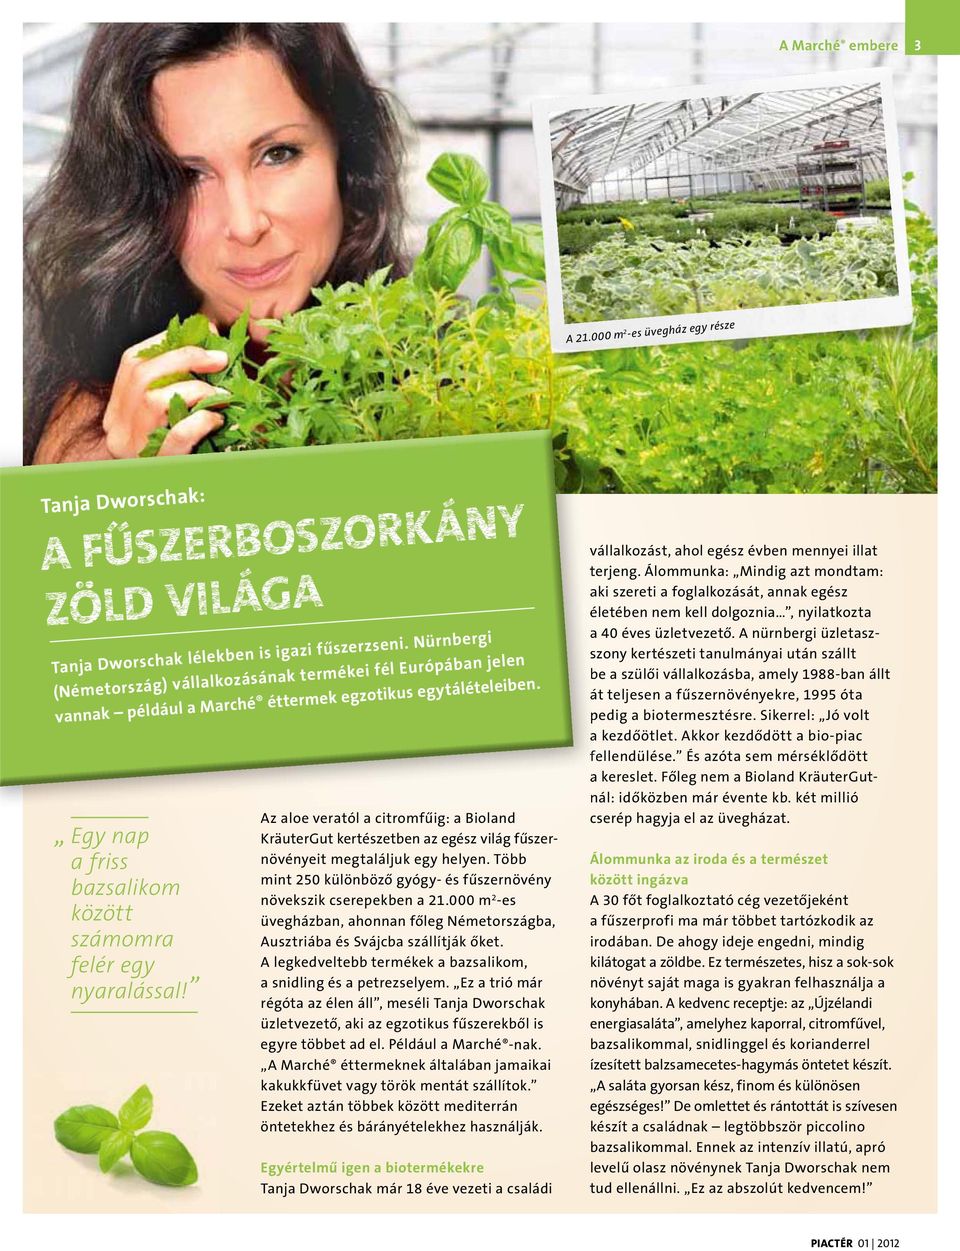 Az aloe veratól a citromfűig: a Bioland KräuterGut kertészetben az egész világ fűszernövényeit megtaláljuk egy helyen. Több mint 250 különböző gyógy- és fűszernövény növekszik cserepekben a 21.